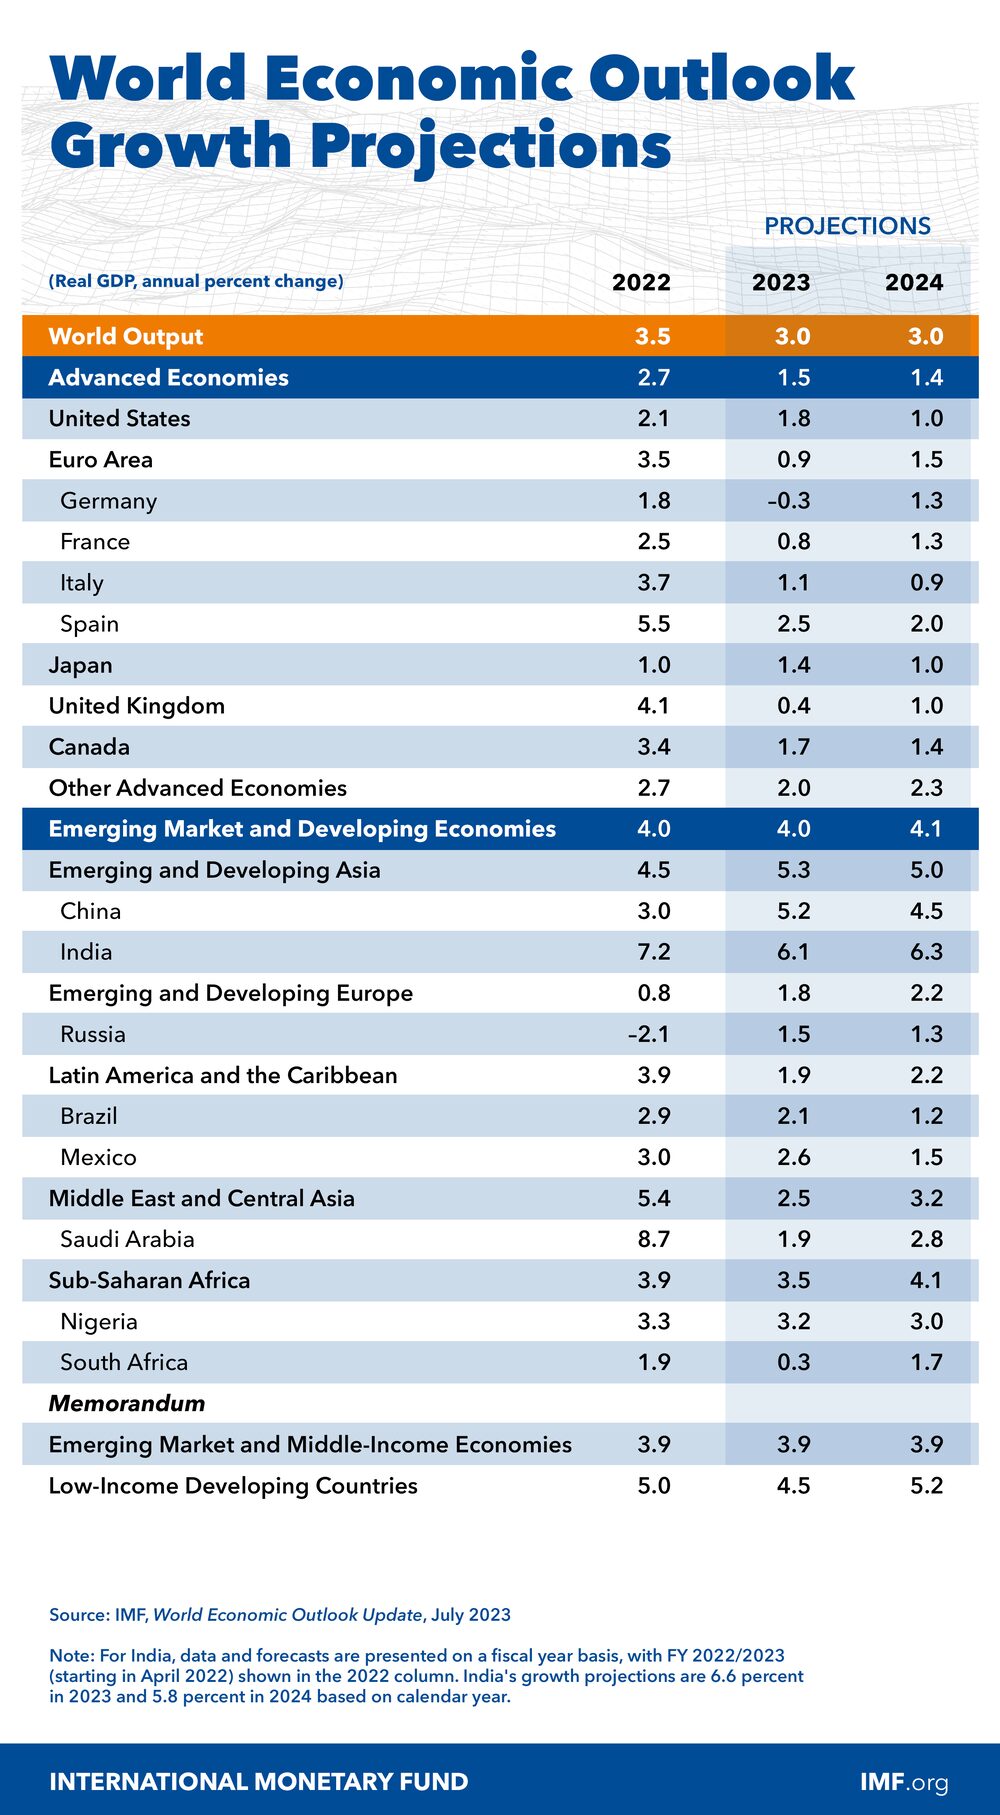 IMF forecasts